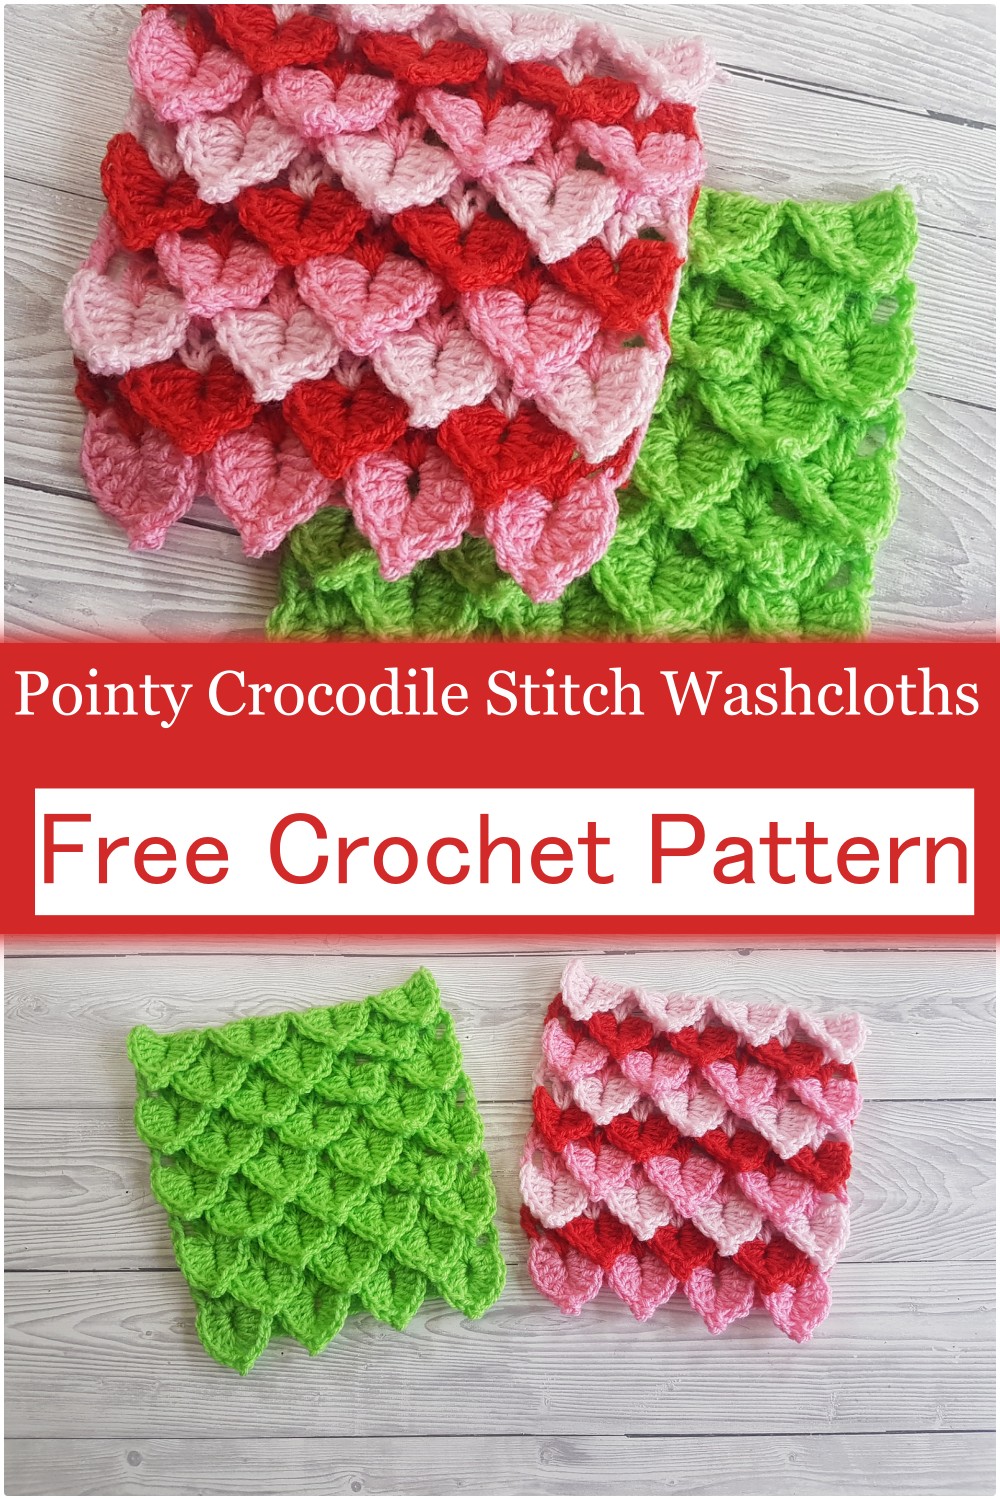 Crochet Crocodile Stitch Washcloths